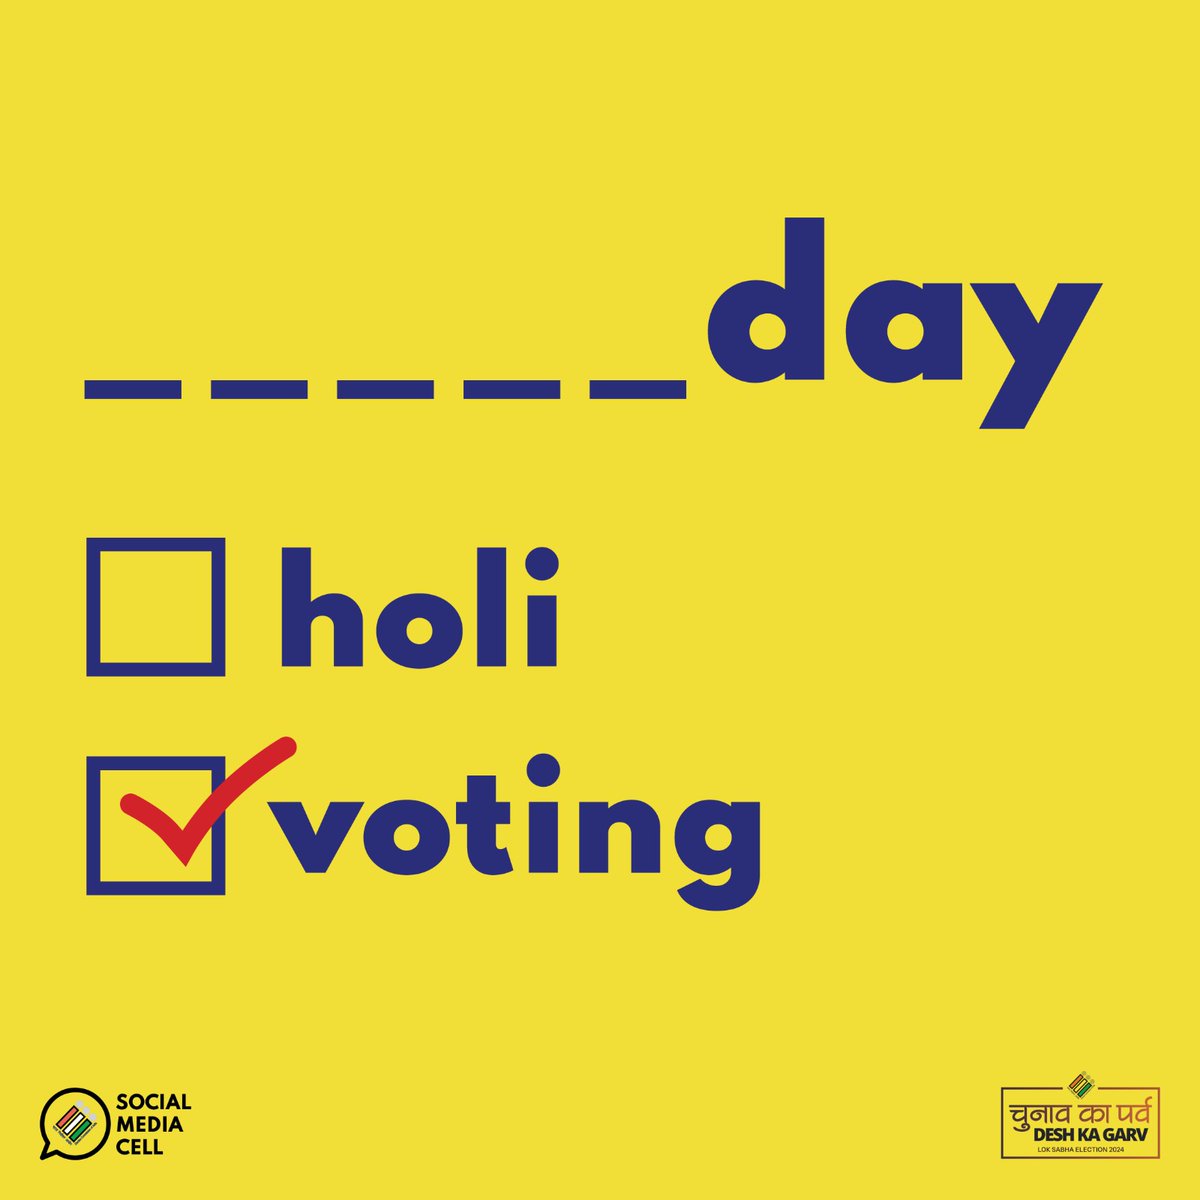 Voting day not holiday! Yes, you got it right ✅

#ChunavKaParv #DeshKaGarv #LokSabhaElections2024